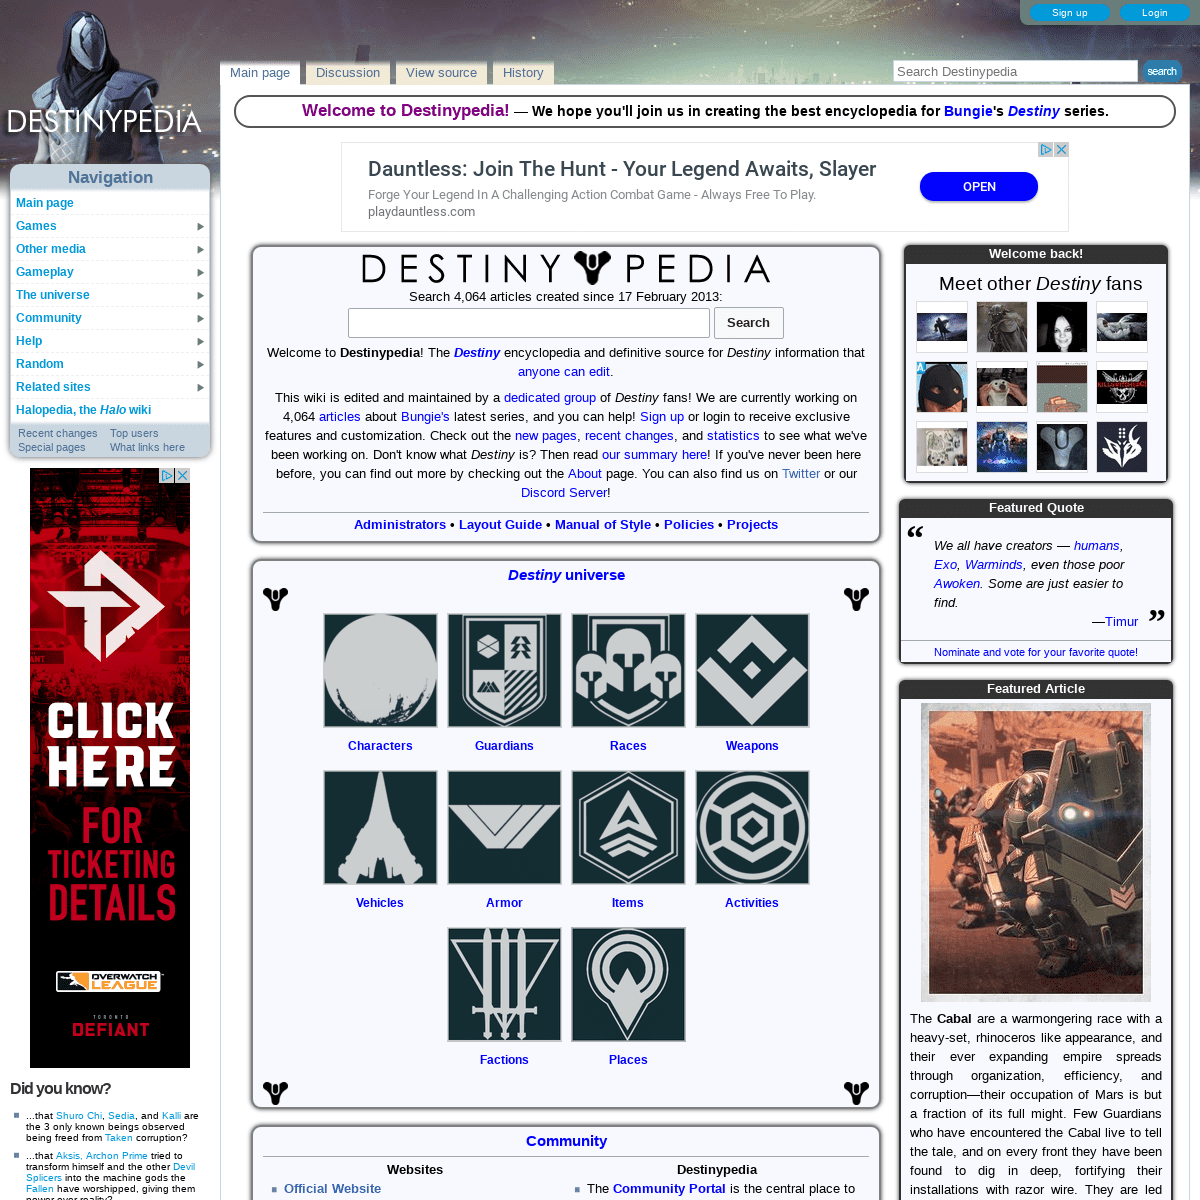 Destinypedia, the Destiny encyclopedia